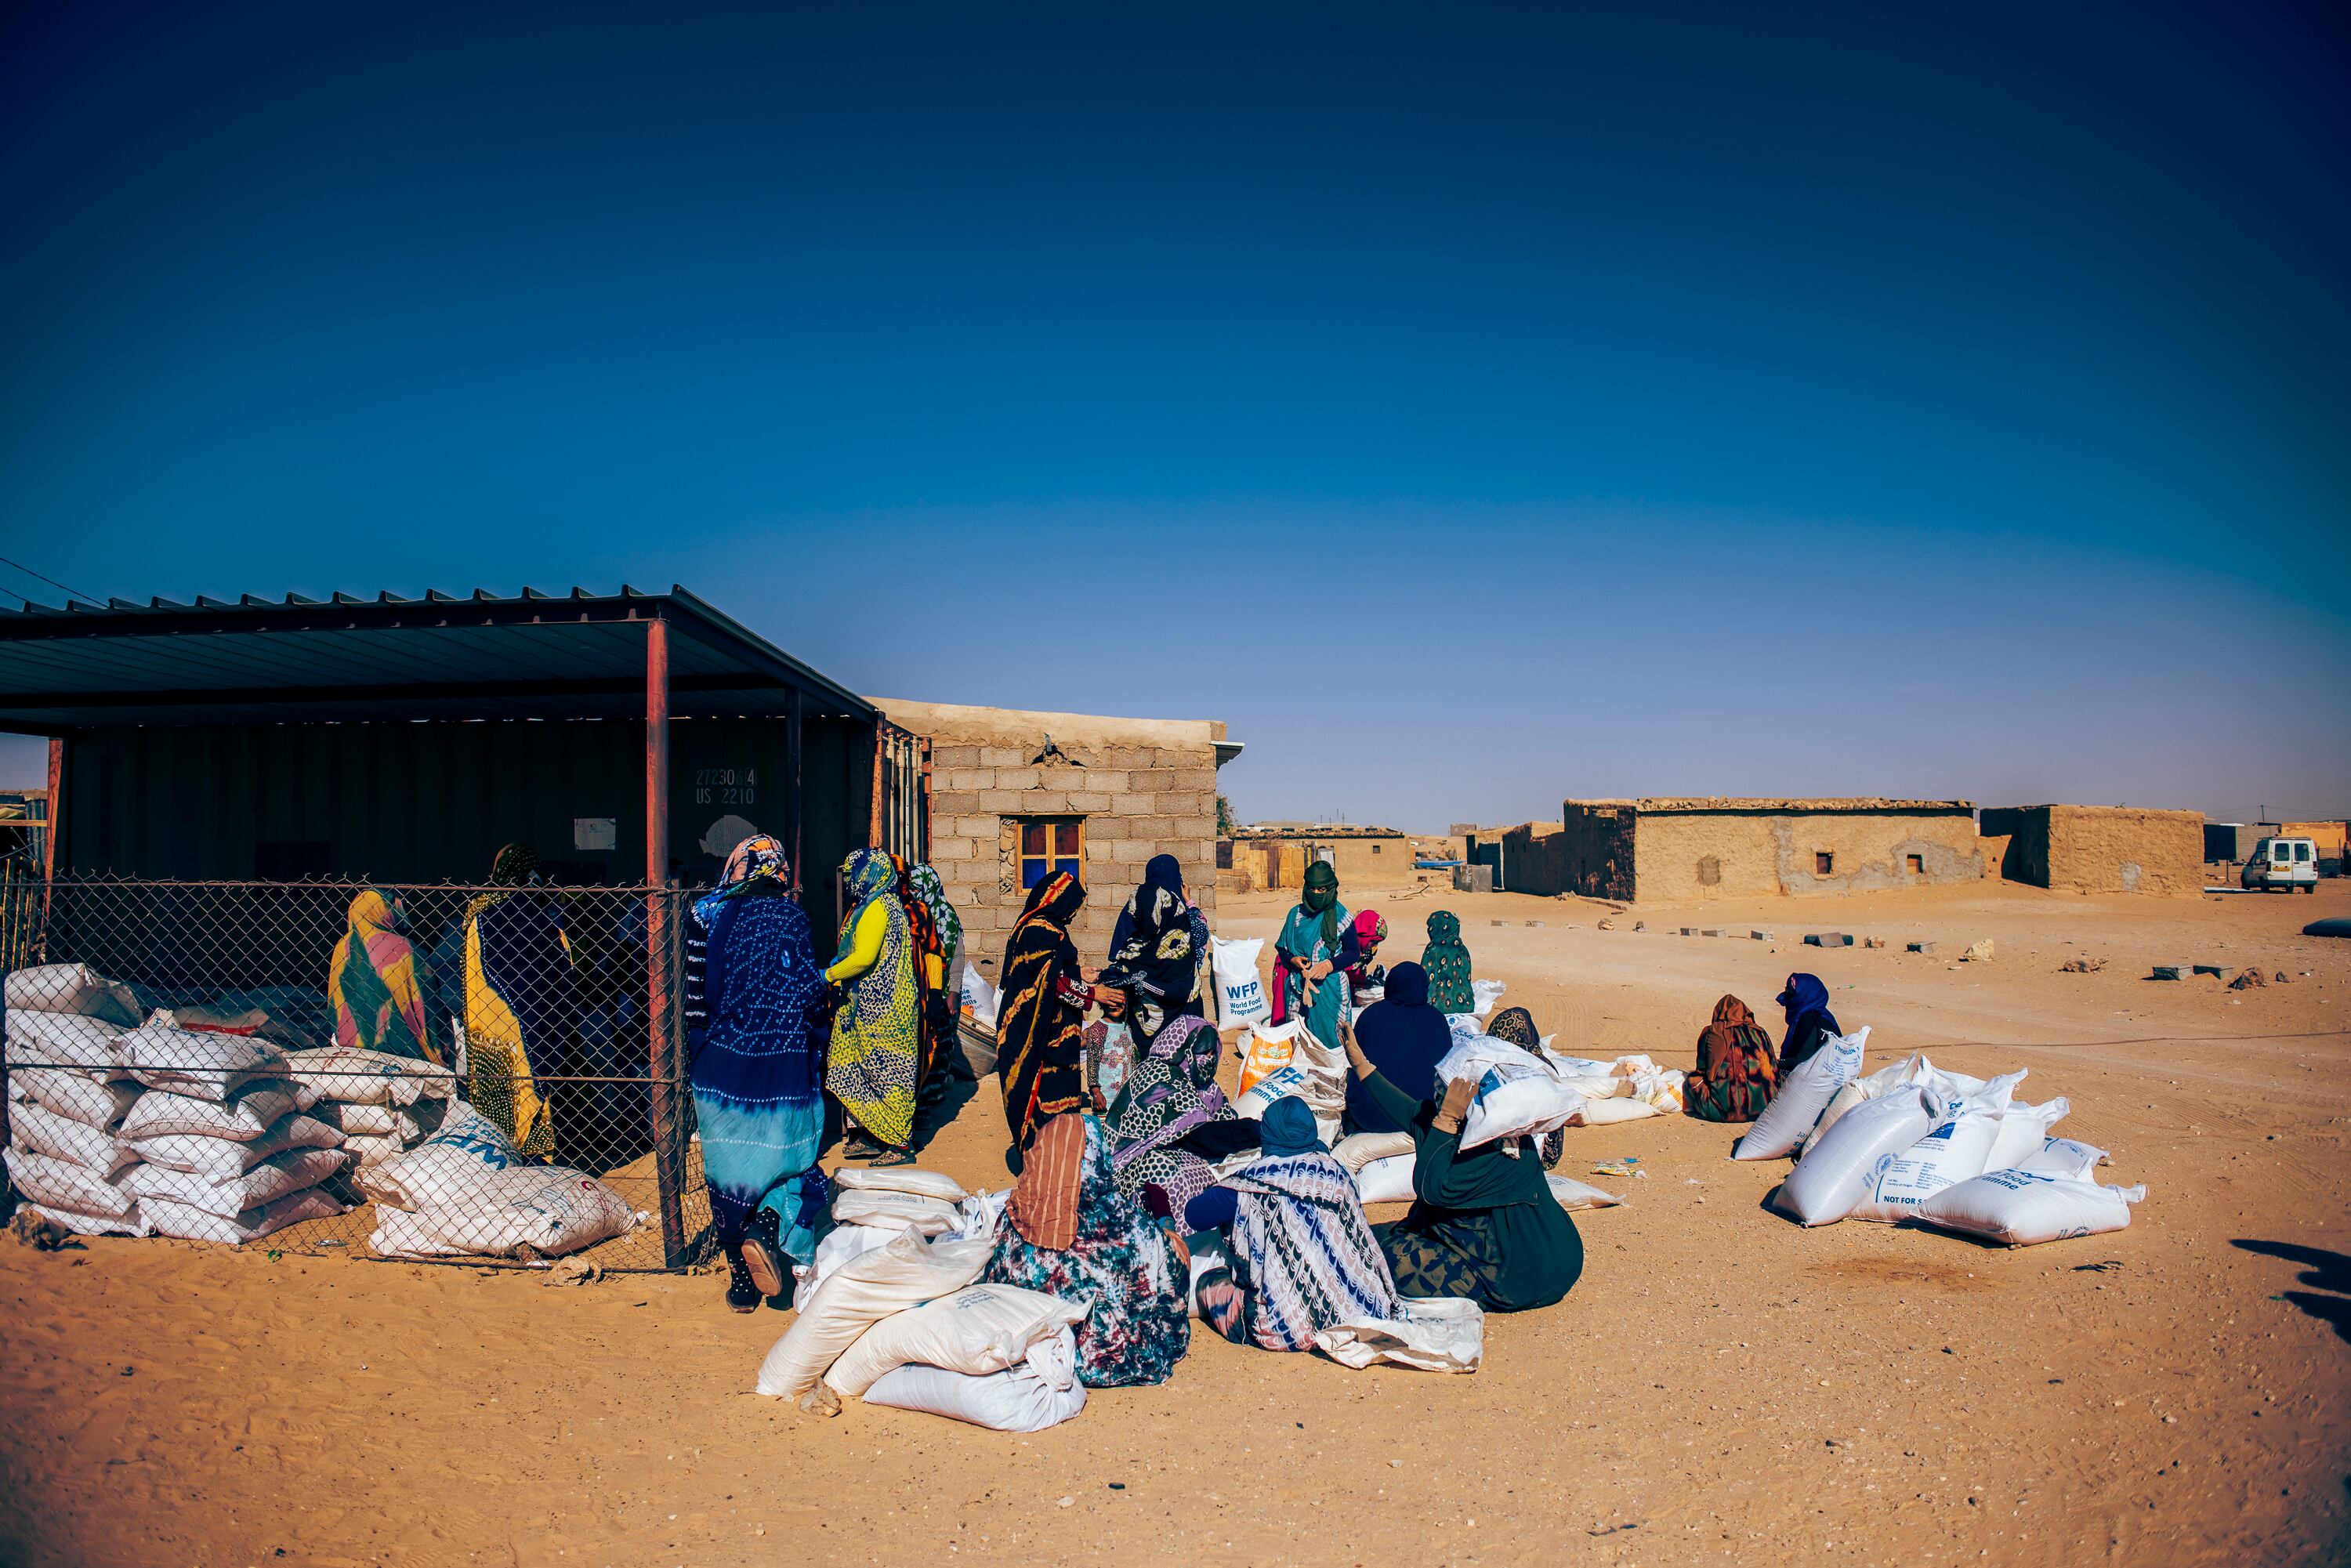 Es día de reparto en la wilaya de Auserd. Un grupo de refugiadas voluntarias apila los sacos por grupos para agilizar el reparto y evitar las peores horas de calor. A medio día, el termómetro marca más de 40ºC. 